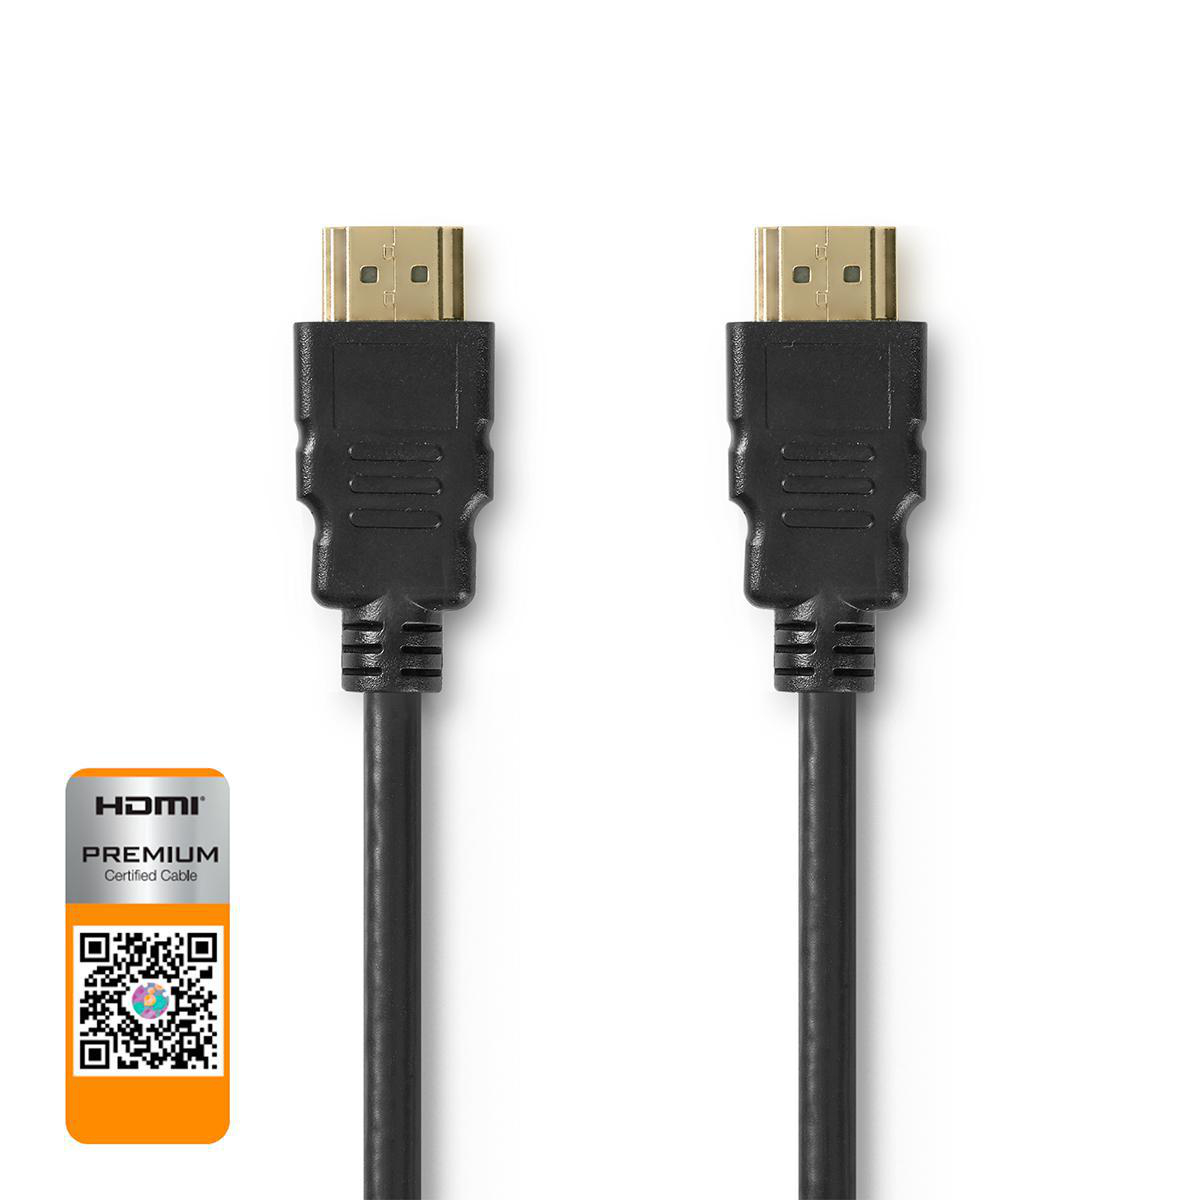 Nedis prémiový High Speed HDMI 2.0b kabel s ethernetem, 4K až 18 GB/s, zástrčka HDMI - zástrčka HDMI, 2 m, černá (CVGP34050BK20)